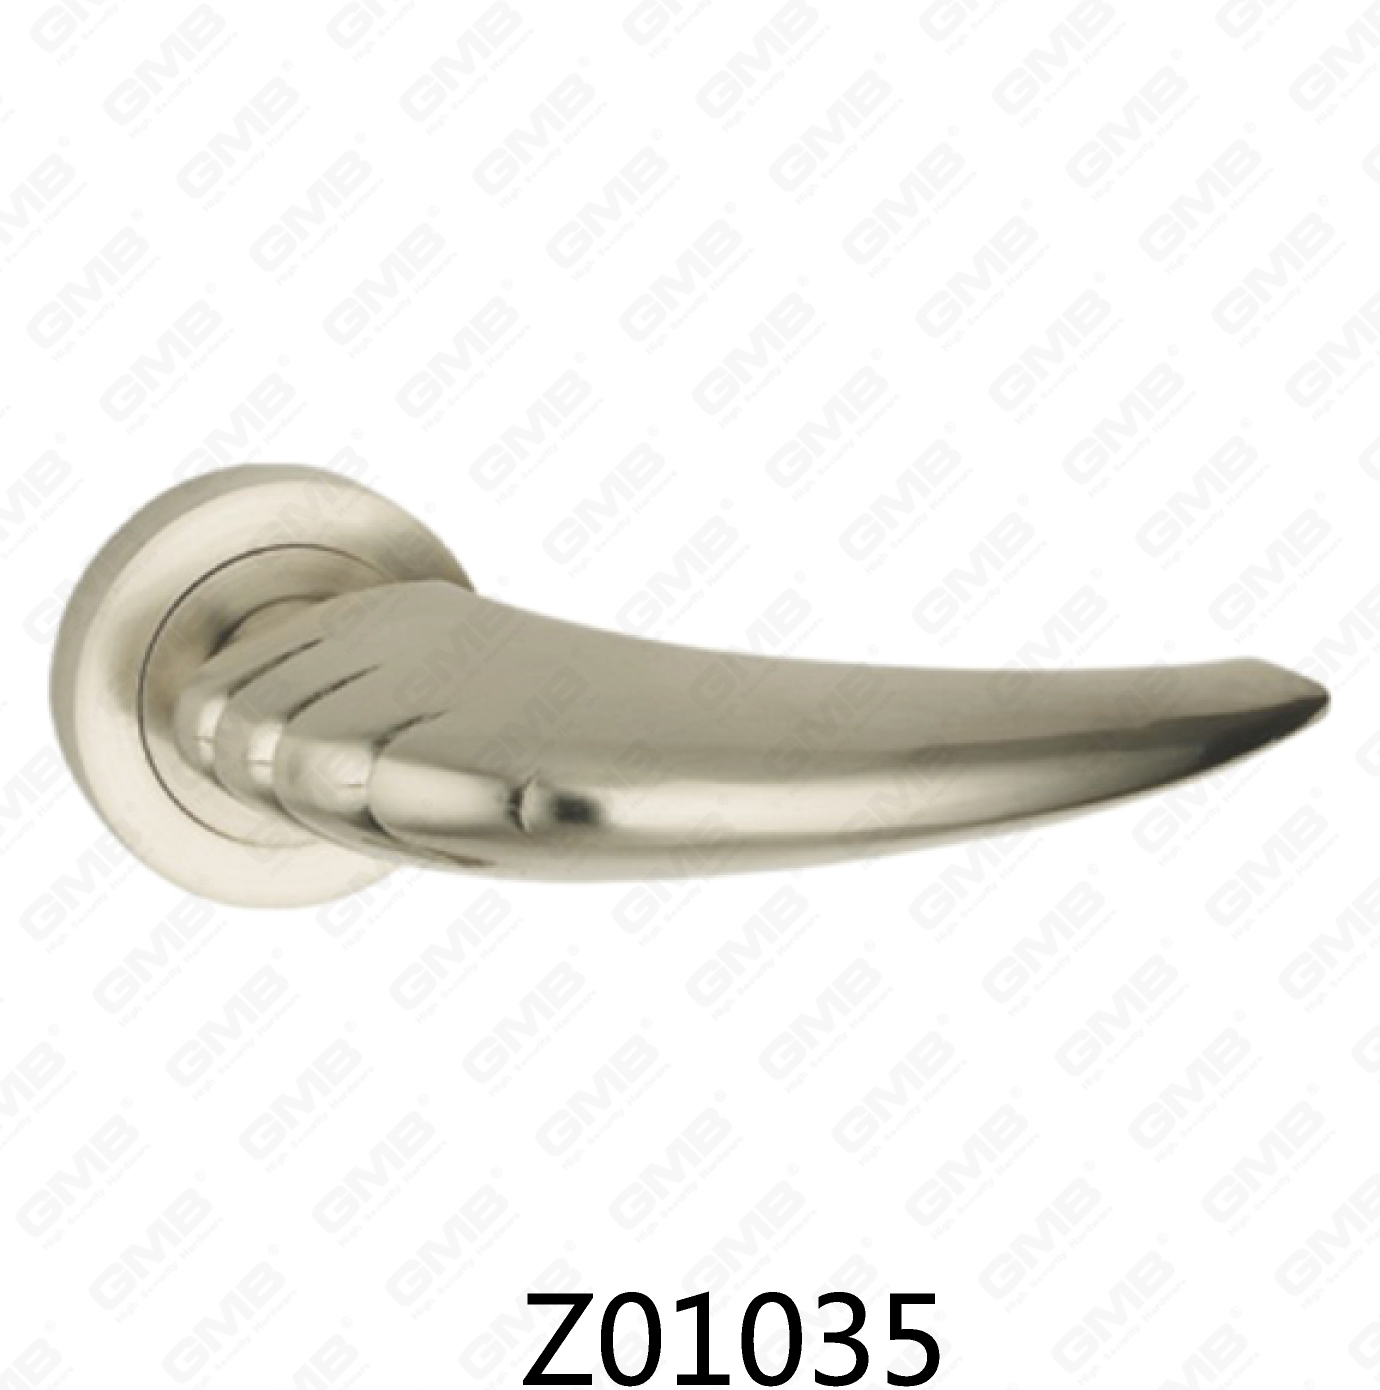 ידית דלת רוזטה מסגסוגת אבץ של Zamak עם רוזטה עגולה (Z01035)